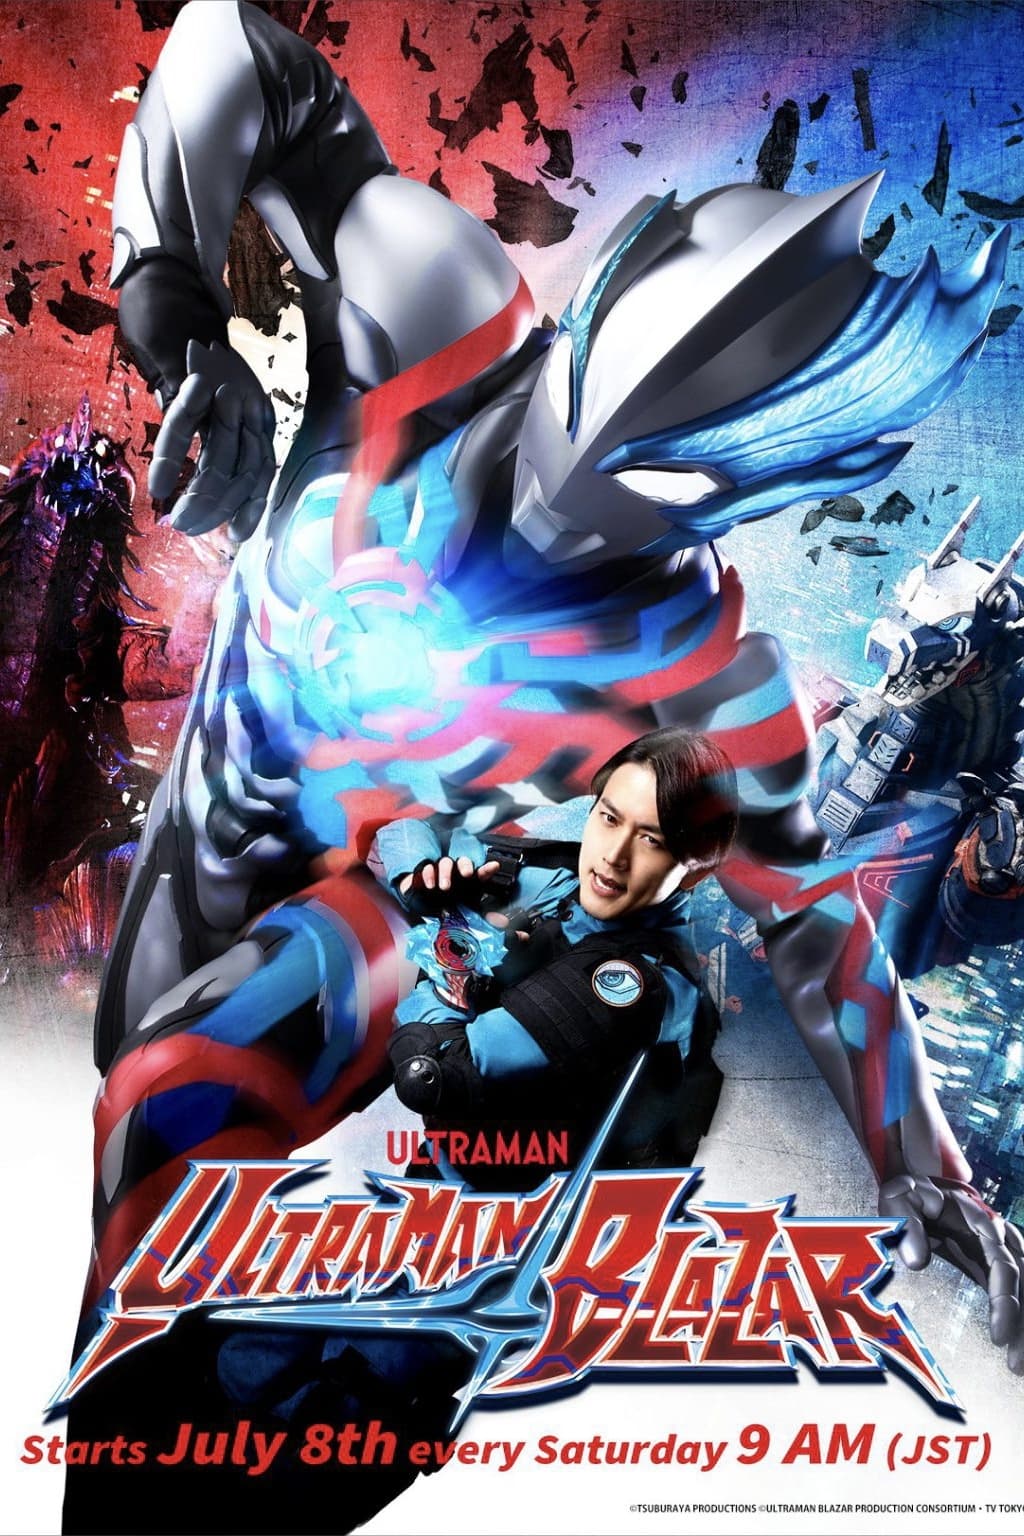 ウルトラマンブレーザー Ultraman Blazar (Updated to EP25)